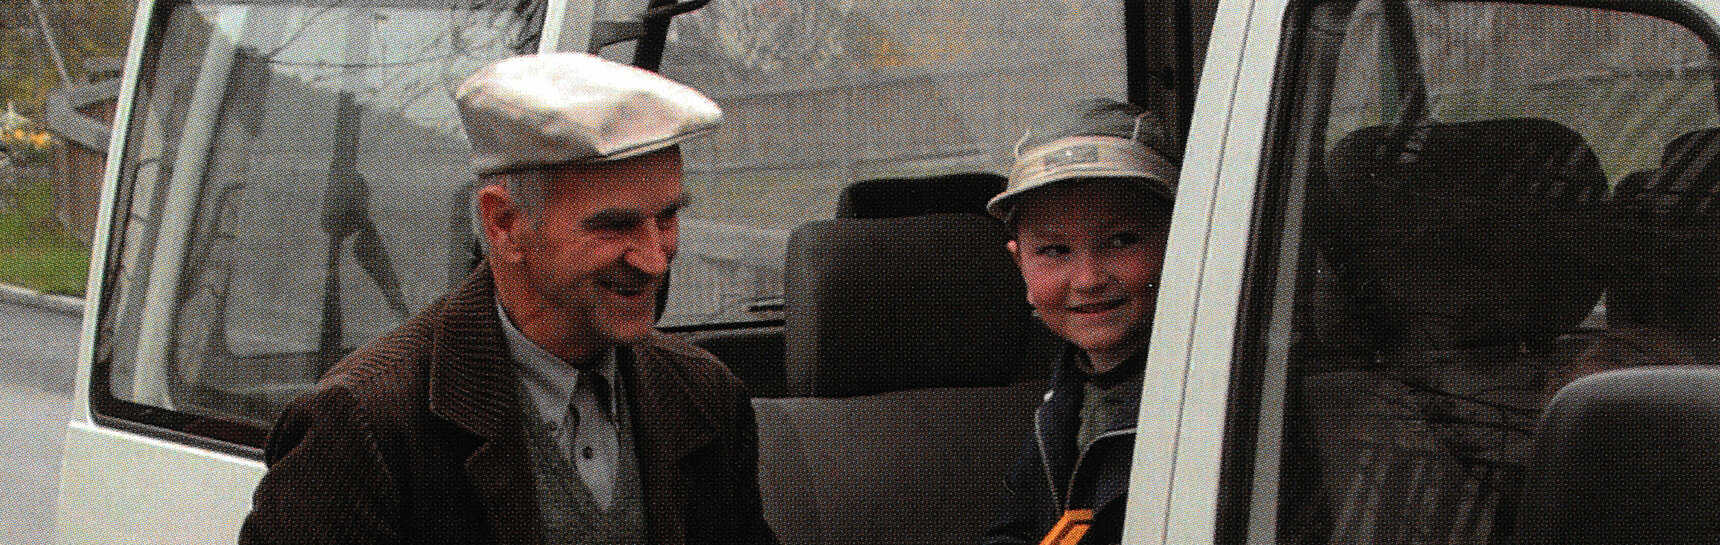 Ein Schulbusfahrer hilft einem Volksschüler mit bunter Schultasche aus einem Kleinbus, beide lächeln